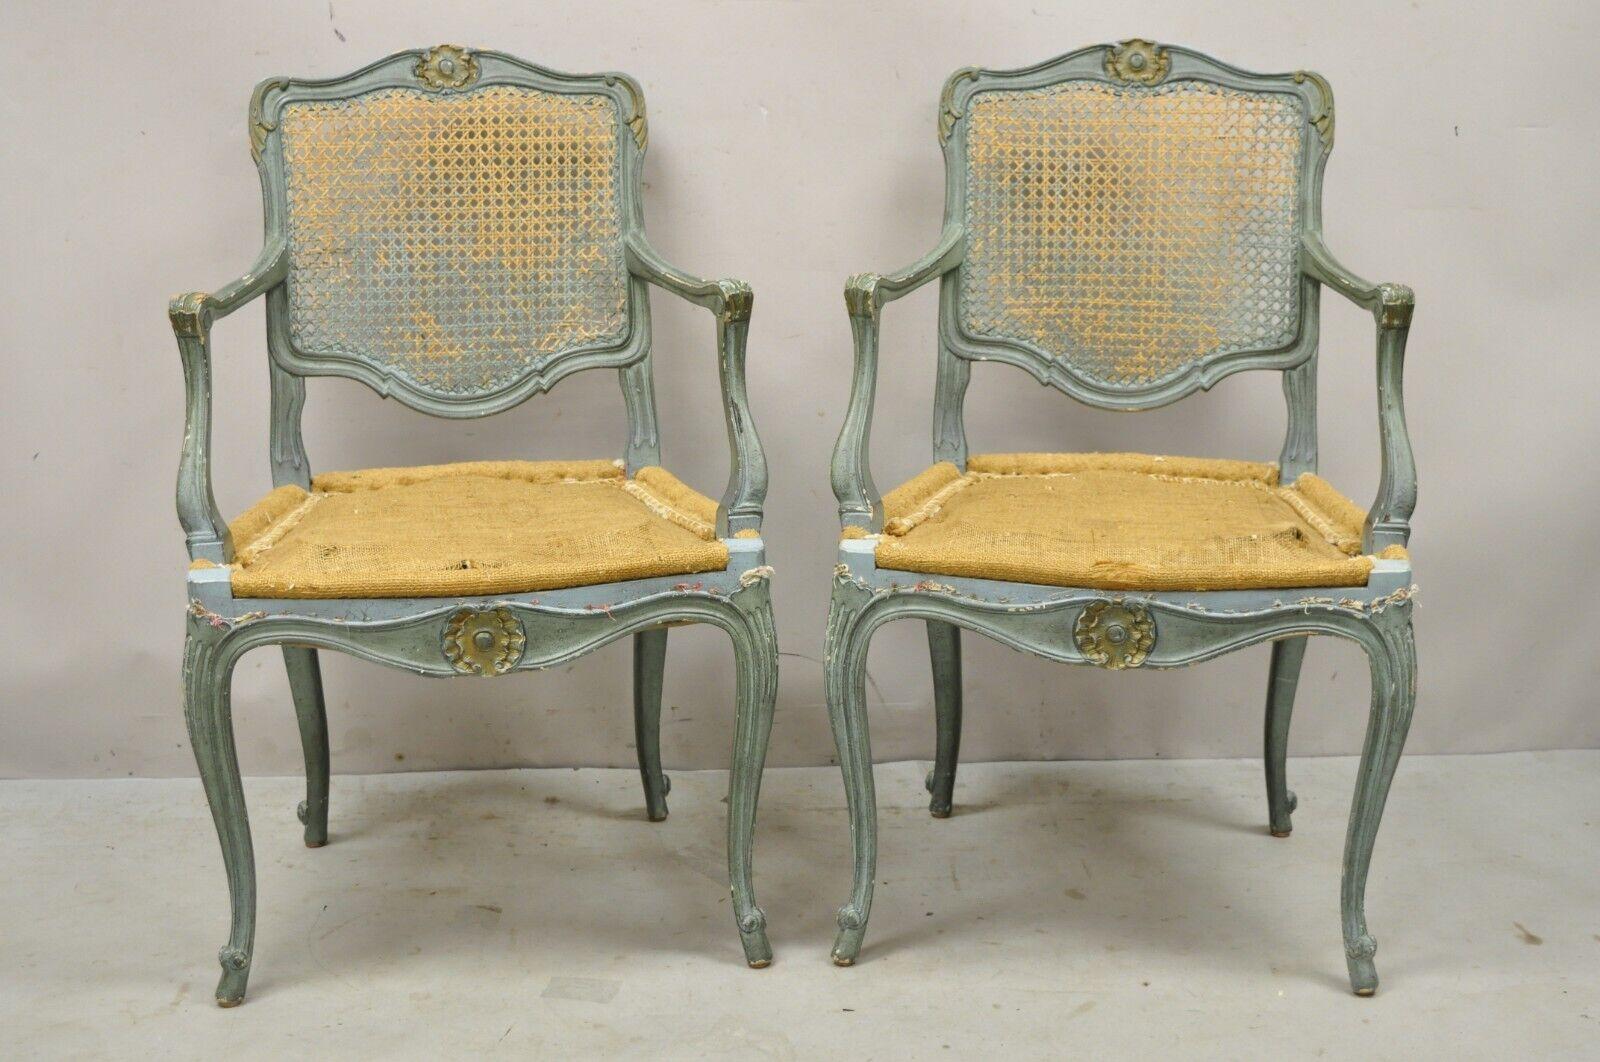 Paar Vintage Französisch Louis XV  Style Blue Painted Cane Back Fauteuil Arm Chairs. Artikel verfügt über Massivholzrahmen, distressed blauen Finish, schön geschnitzten Details, Rohr zurück, Cabriole Beine, Qualität Handwerkskunst, großen Stil und